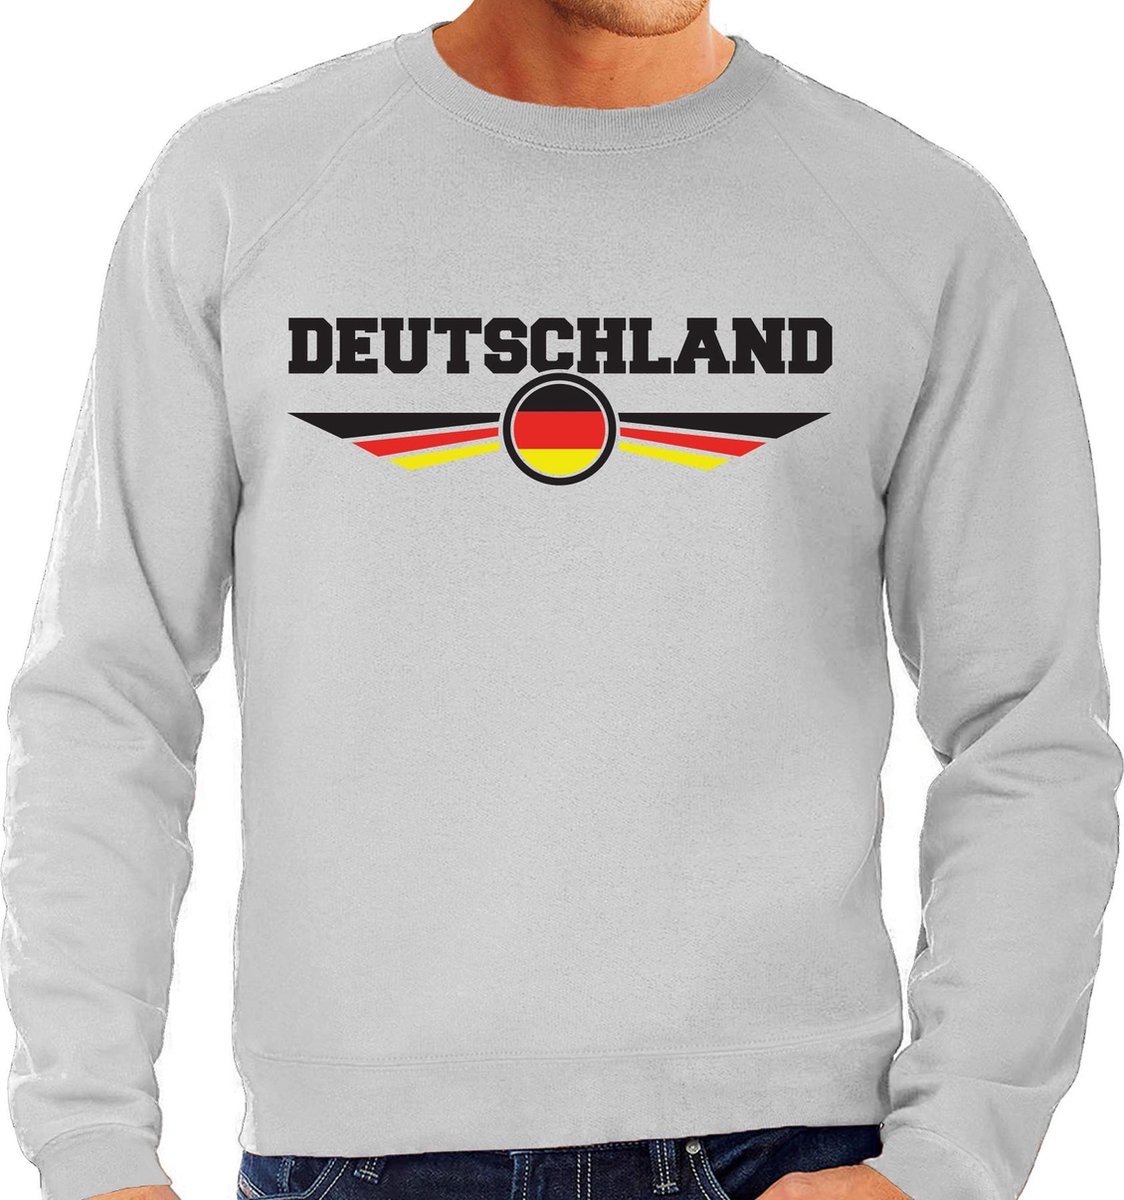 Duitsland / Deutschland landen sweater / trui grijs heren M